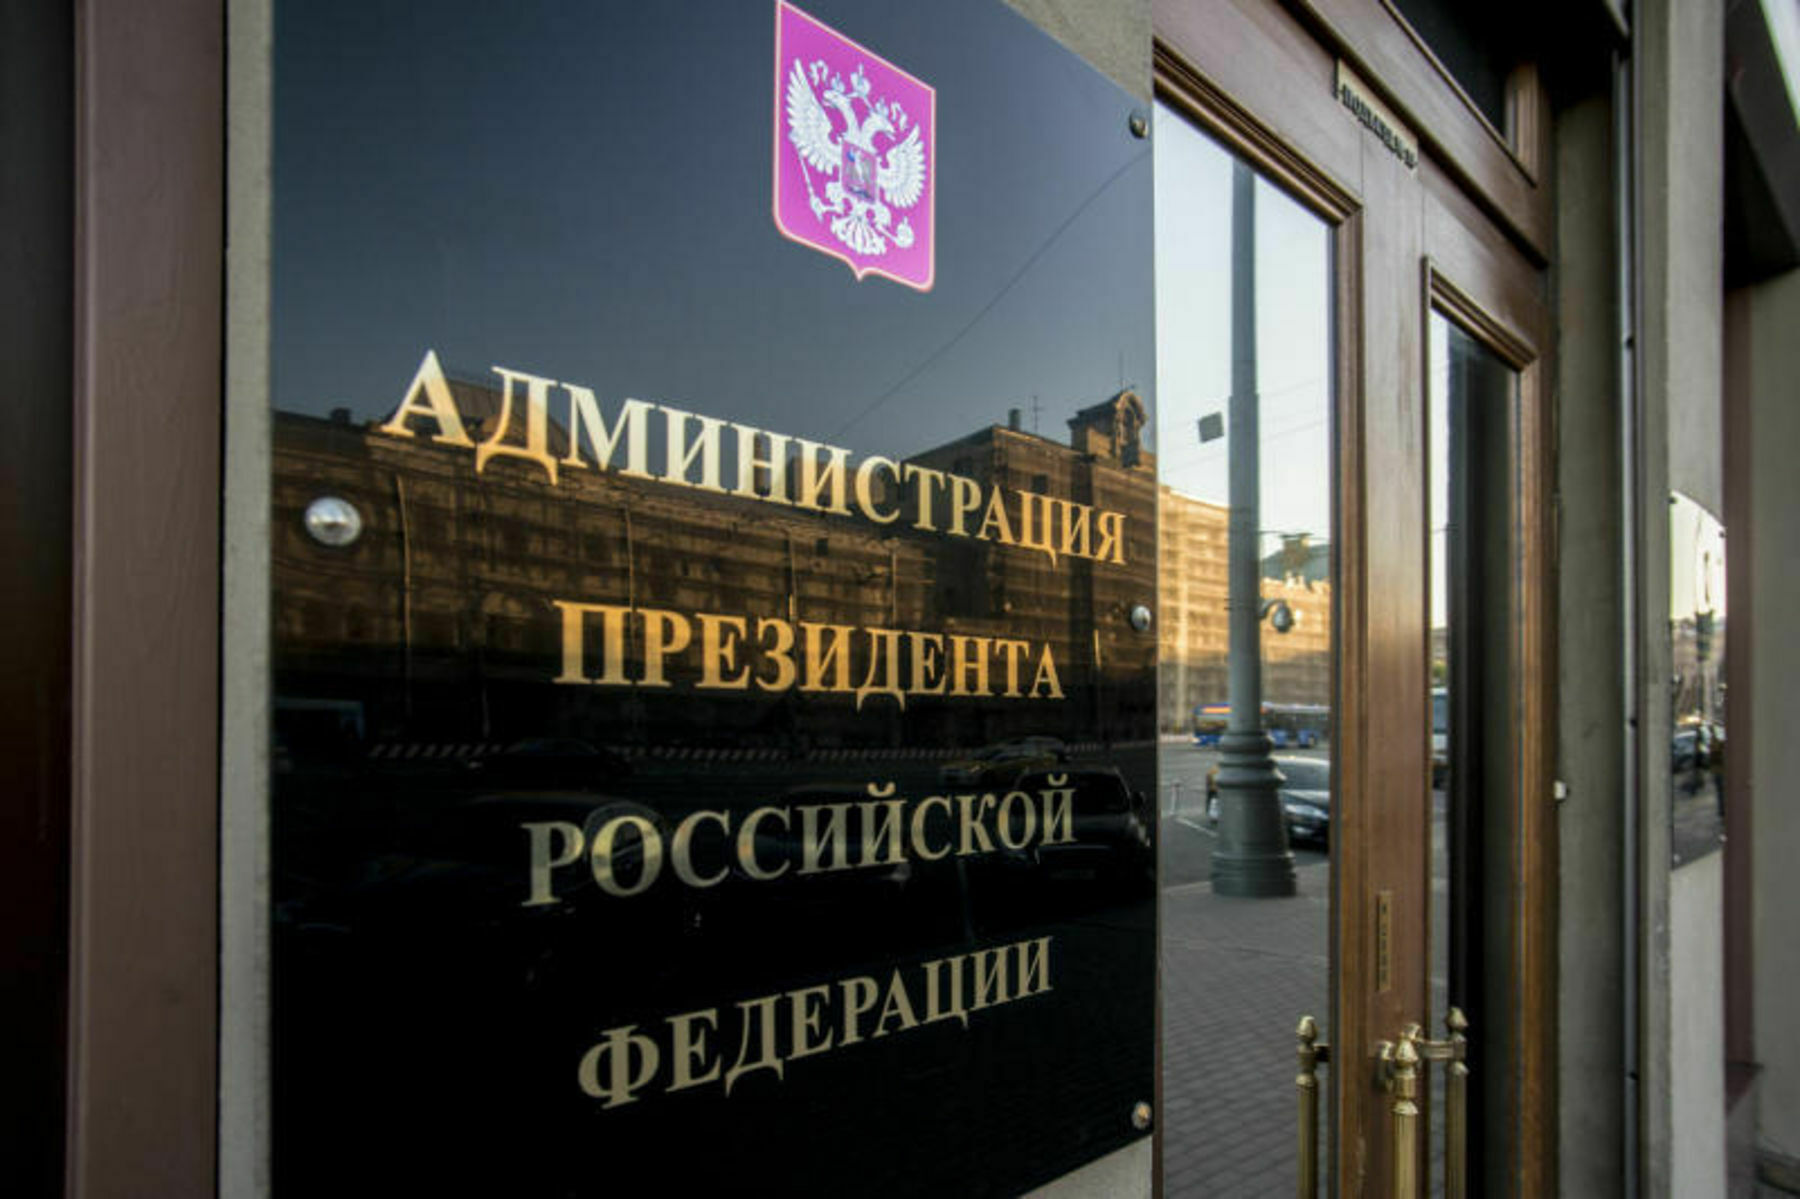 На трехлетнее содержание органов власти в бюджет заложили 1,5 трлн рублей